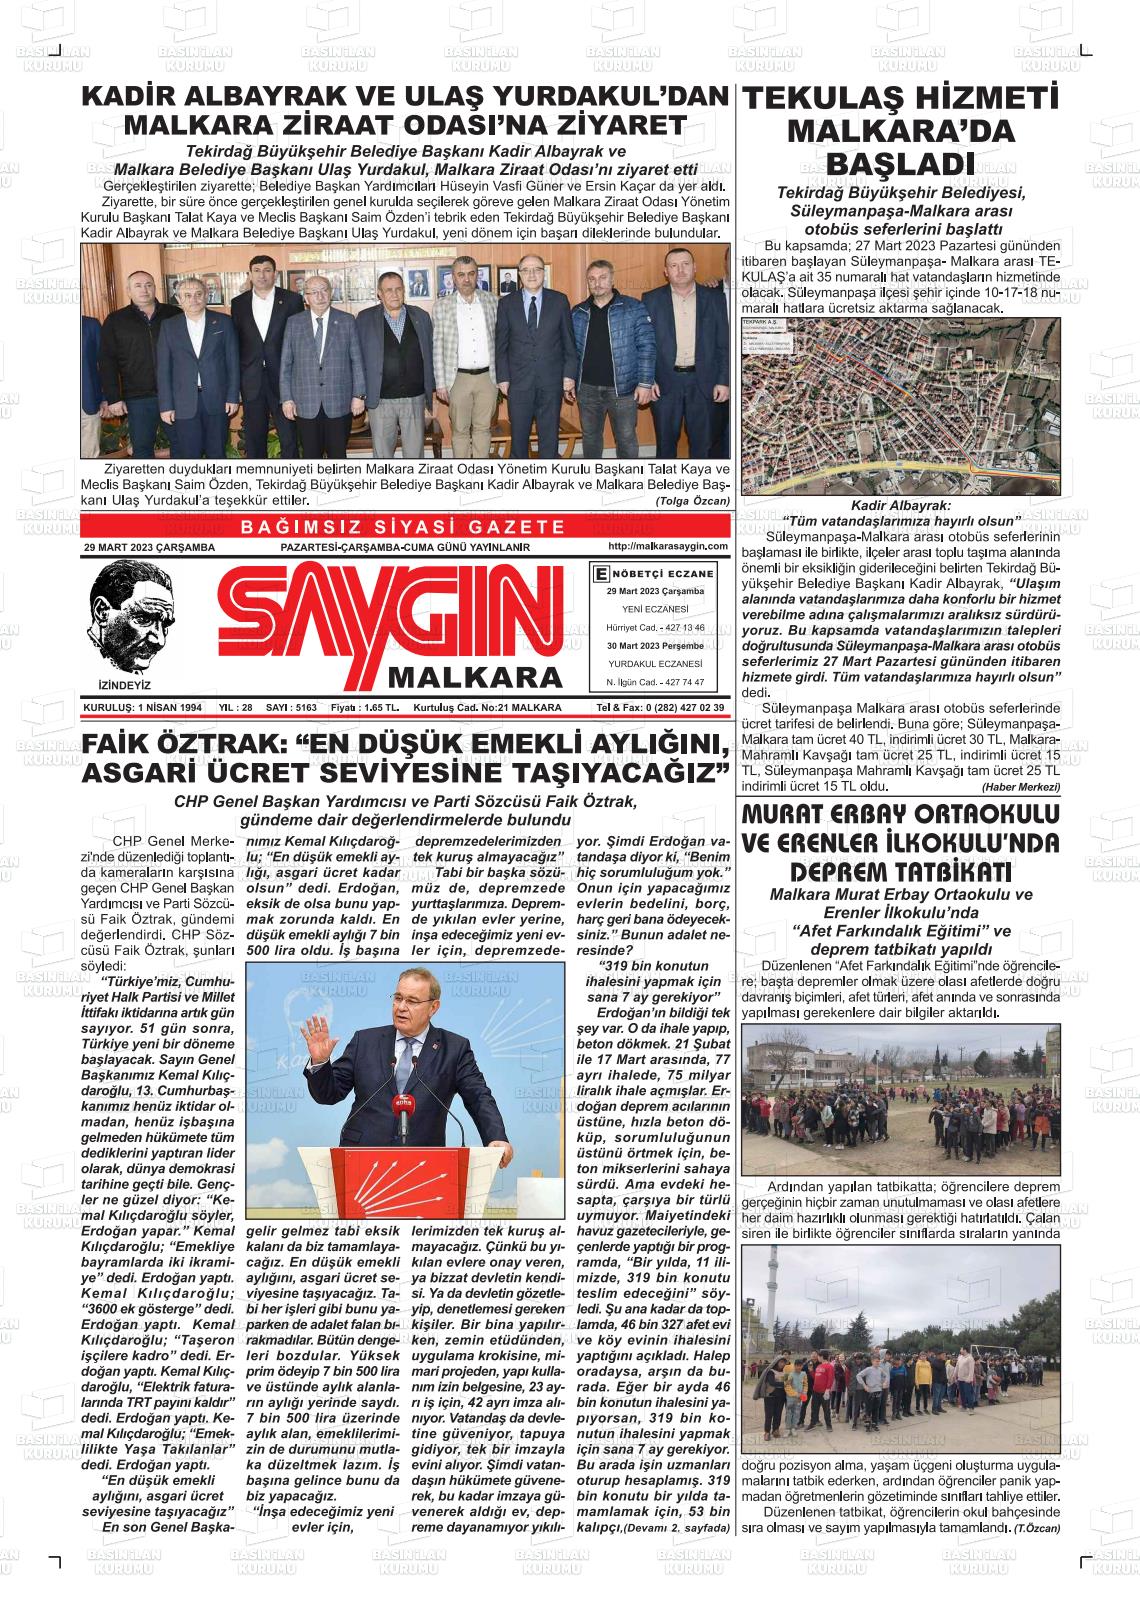 29 Mart 2023 Saygın Malkara Gazete Manşeti